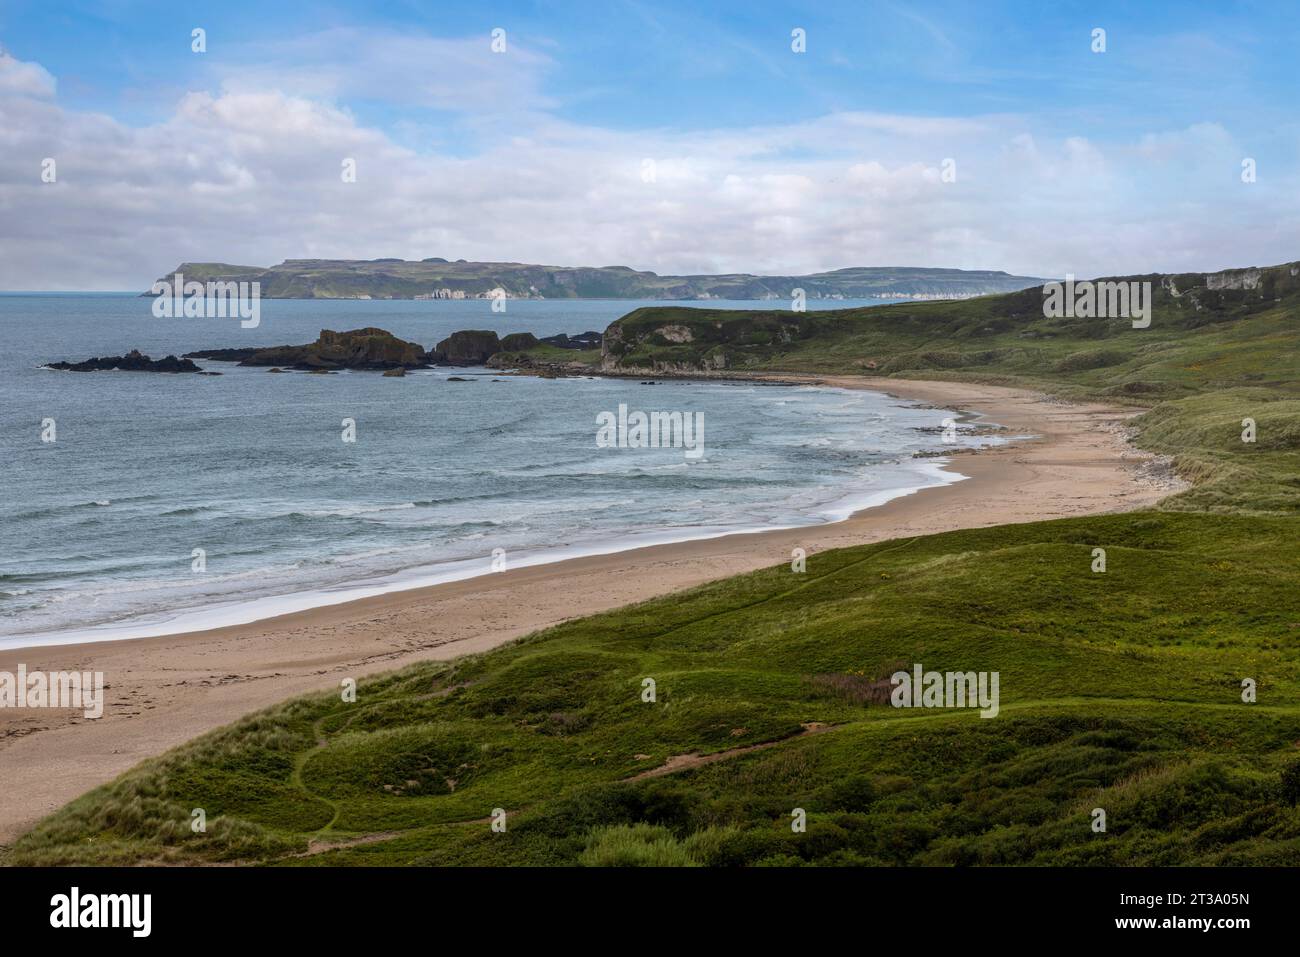 White Park Bay ist ein abgeschiedener Sandstrand an der North Antrim Coast von Nordirland, mit atemberaubendem Blick auf den Atlantik. Stockfoto